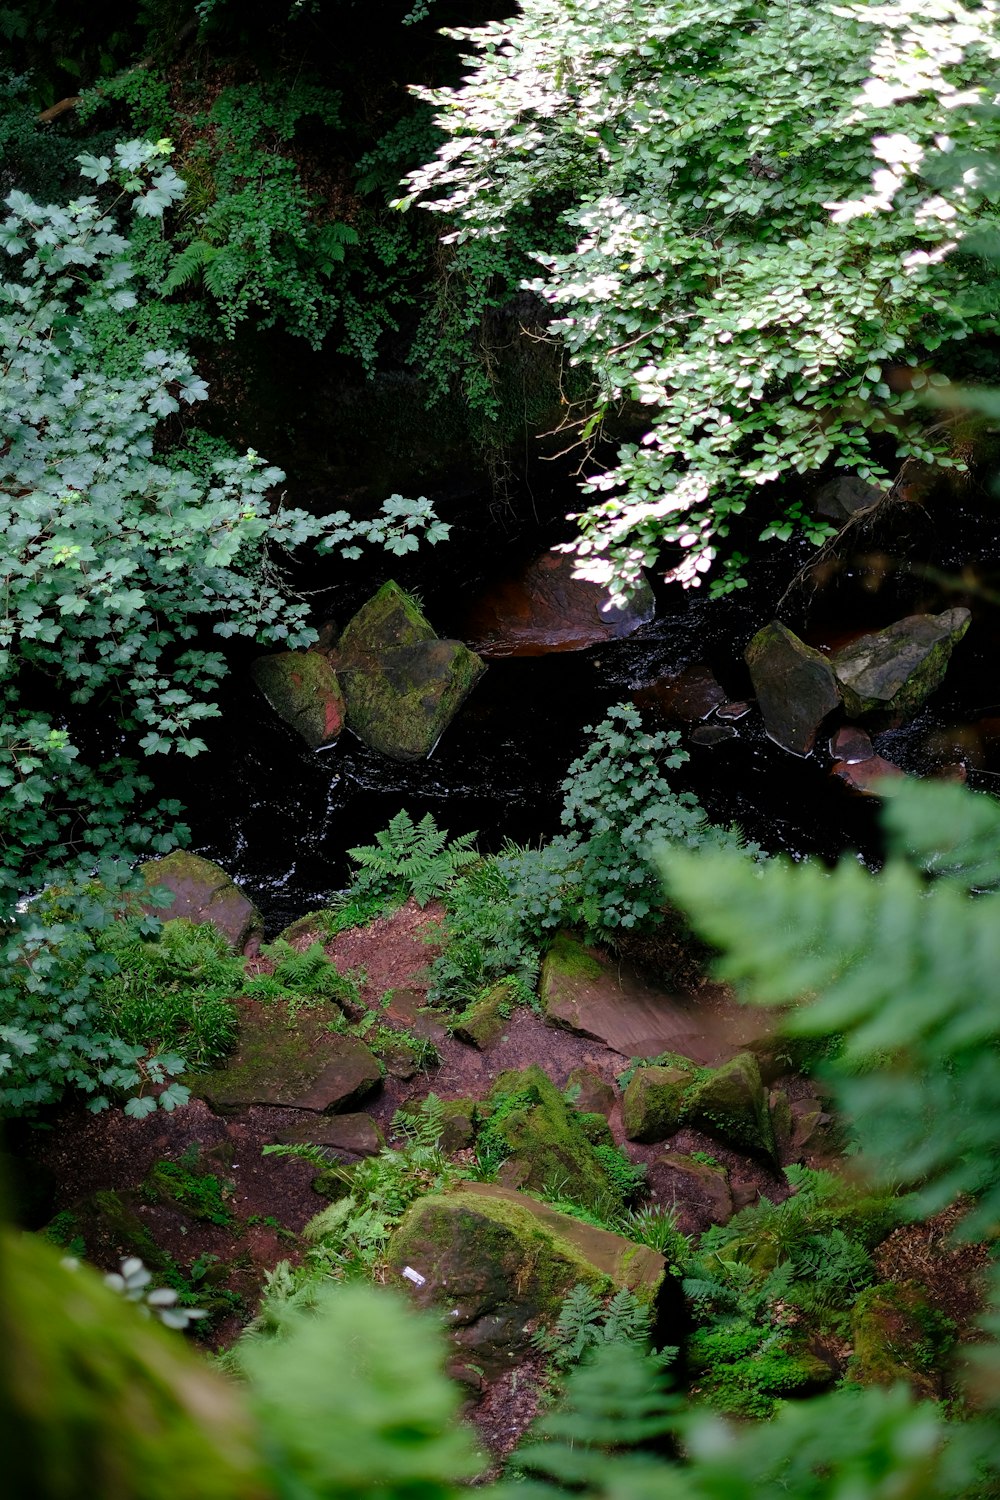 ein Bach, der durch einen üppig grünen Wald fließt